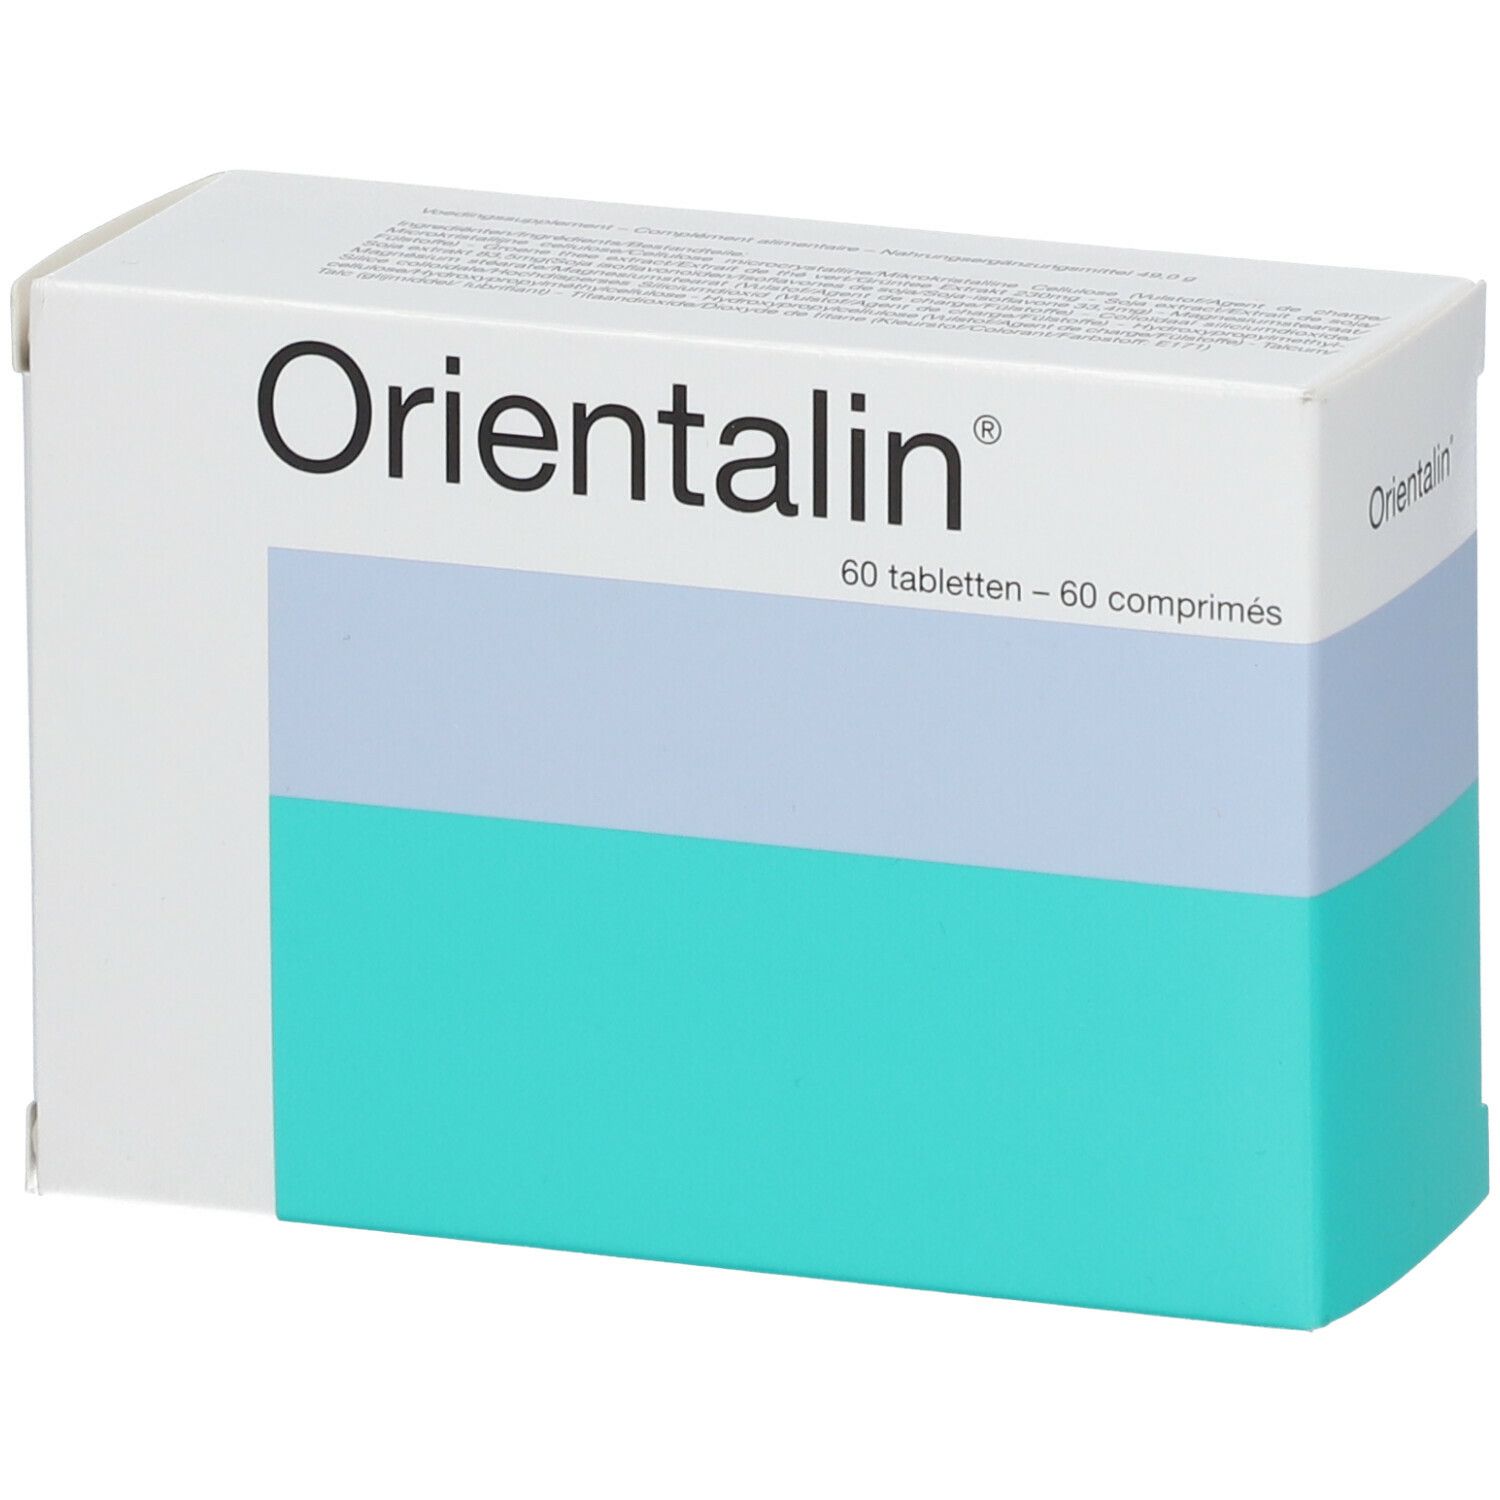 Orientalin®